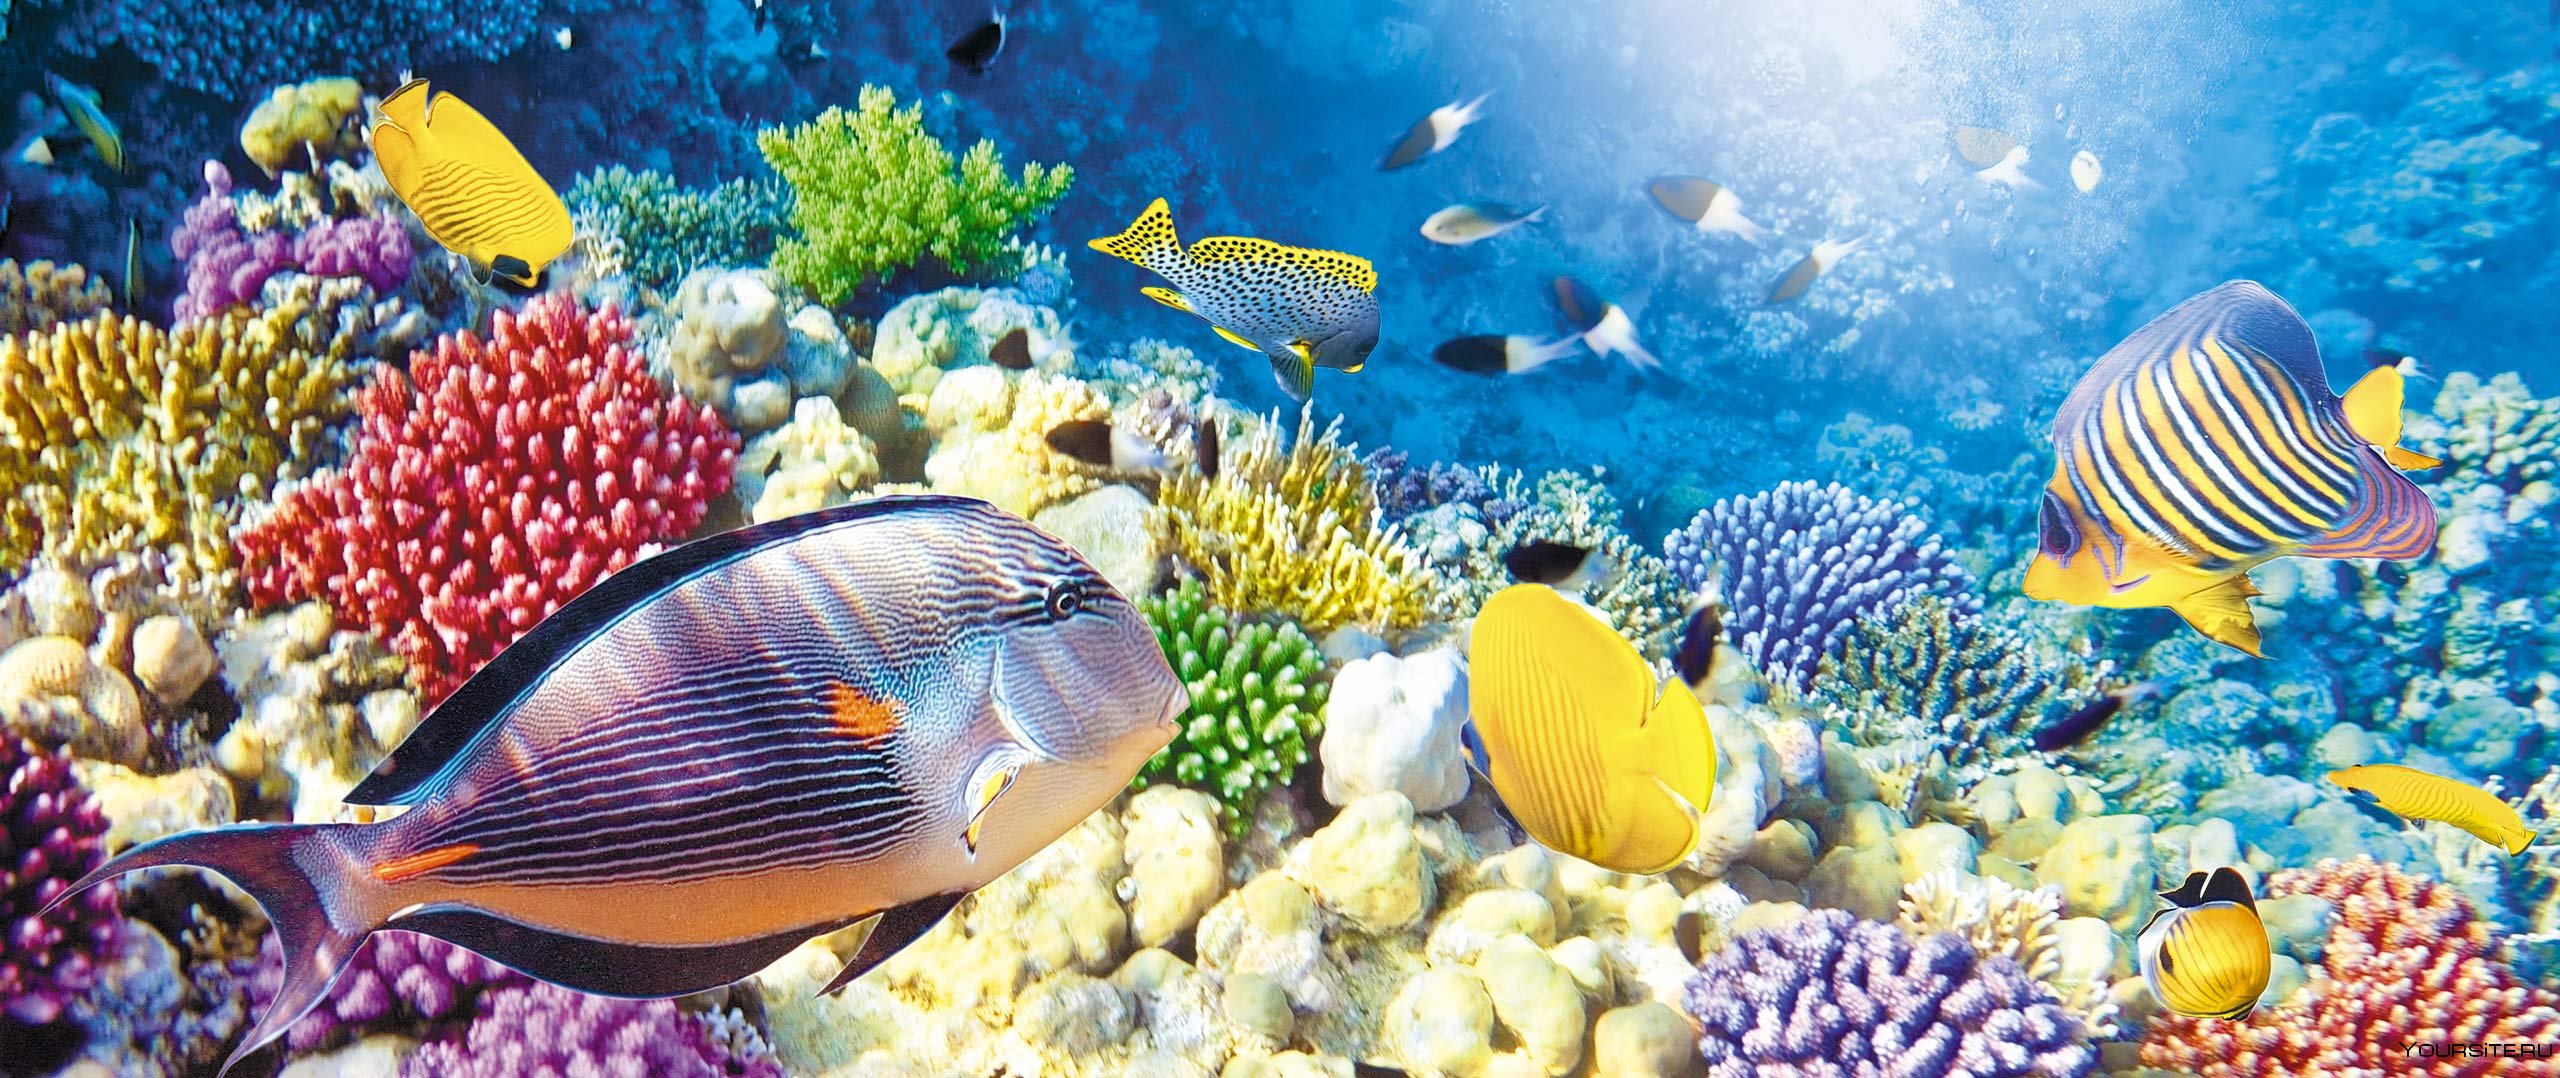 Подводный мир красного моря